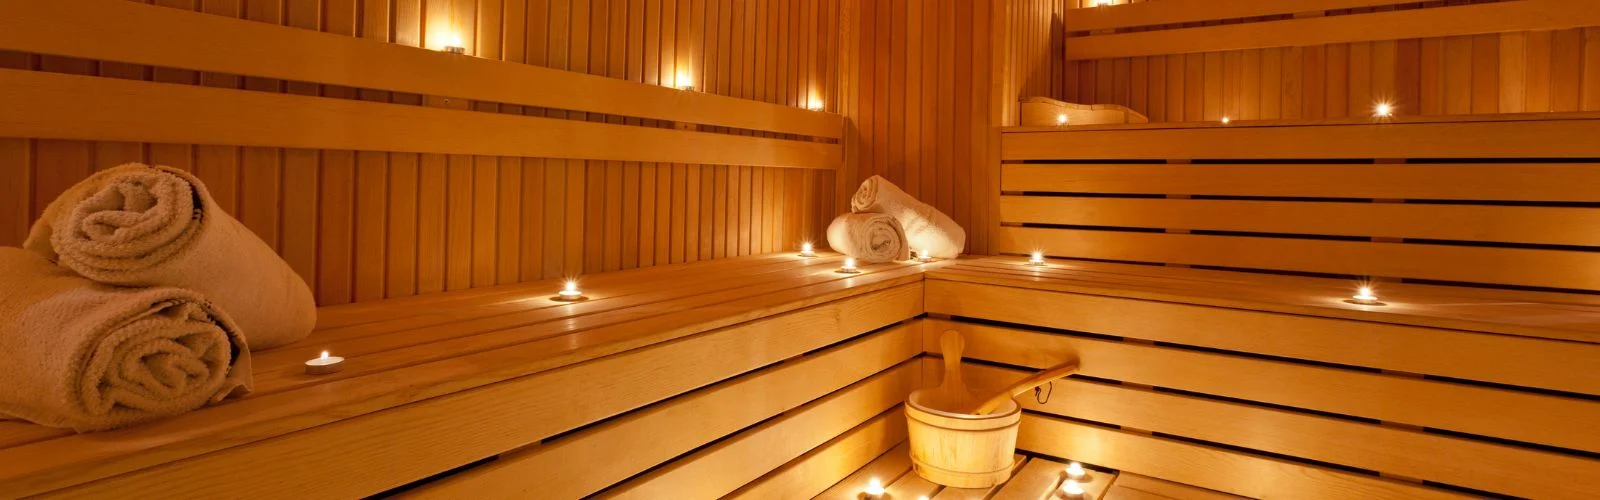 In-home sauna